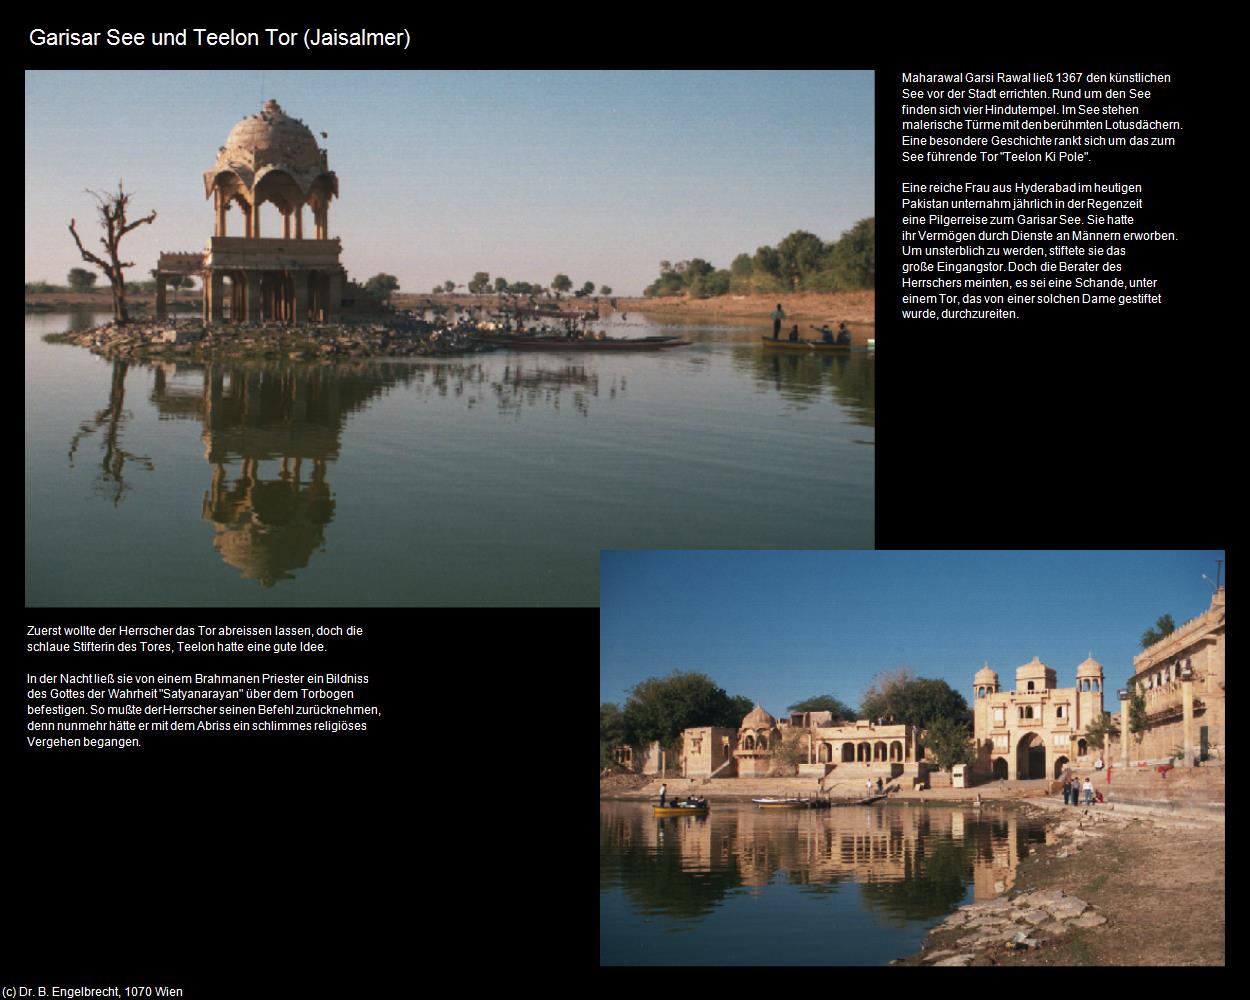 Gadisar See und Teelon Tor (Jaisalmer) in Rajasthan - das Land der Könige